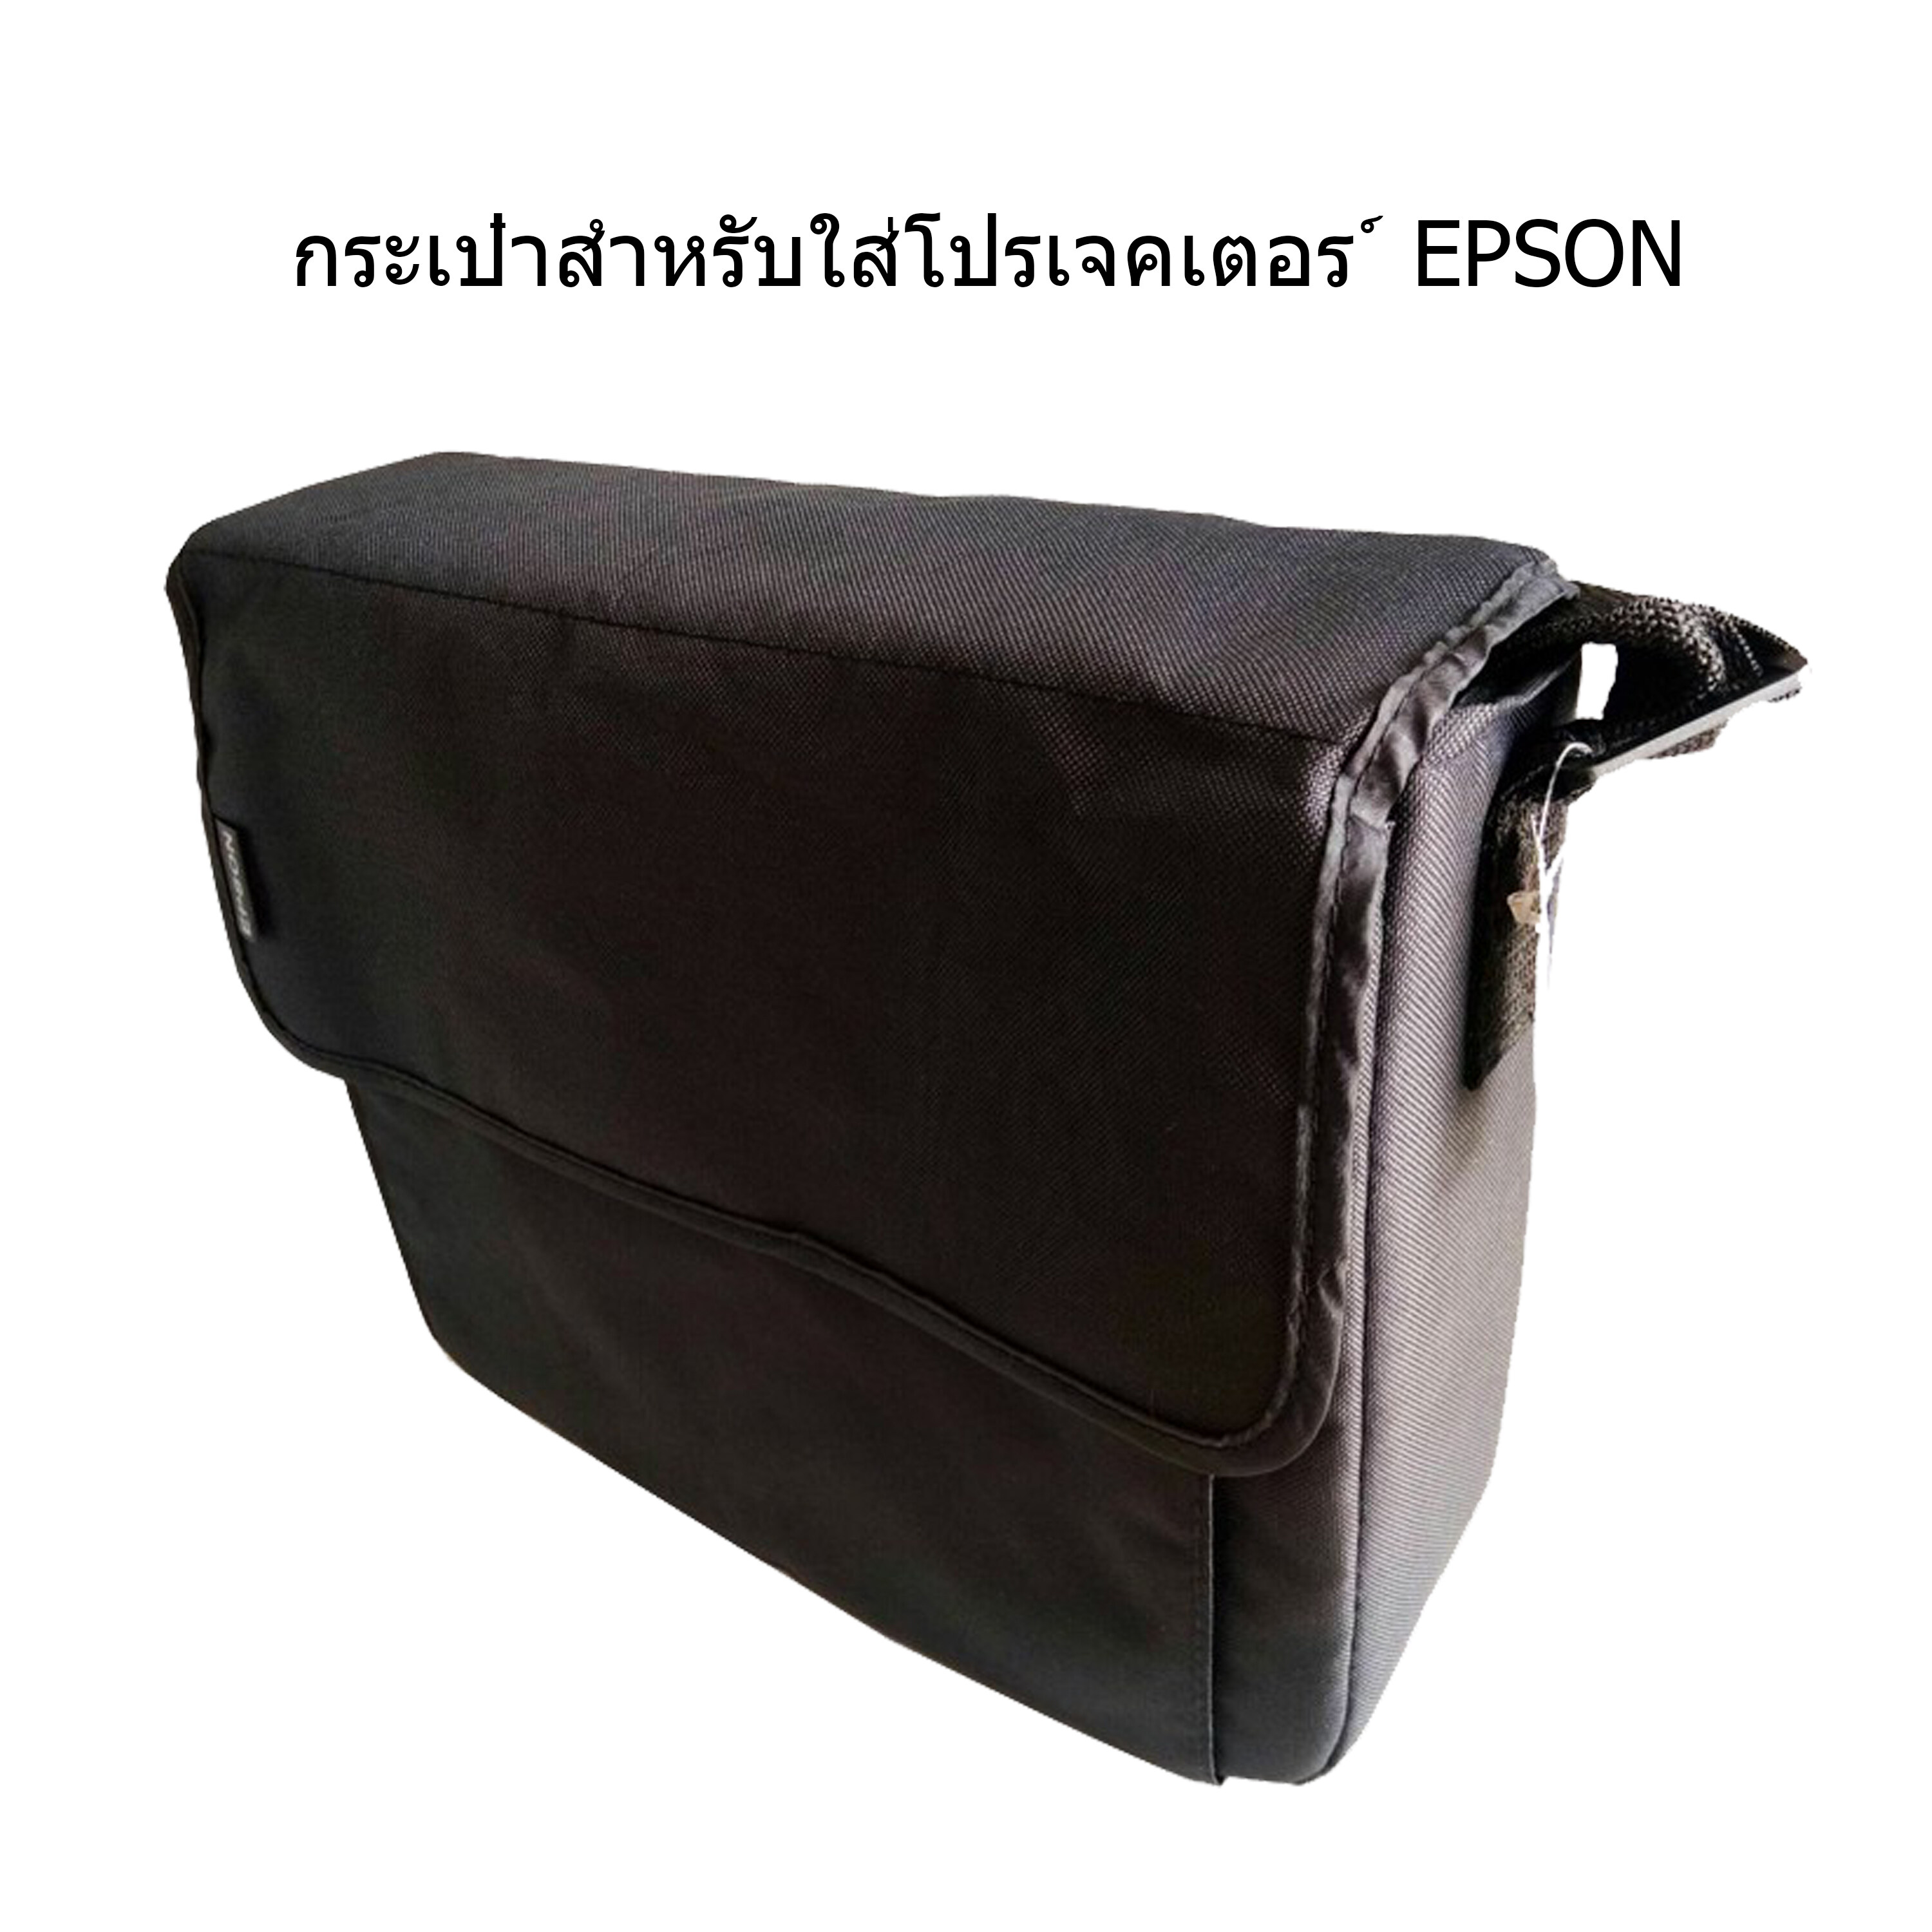 กระเป๋าสำหรับโปรเจคเตอร์ EPSON ขนาด 37 x 30 x 13 เซนติเมตร